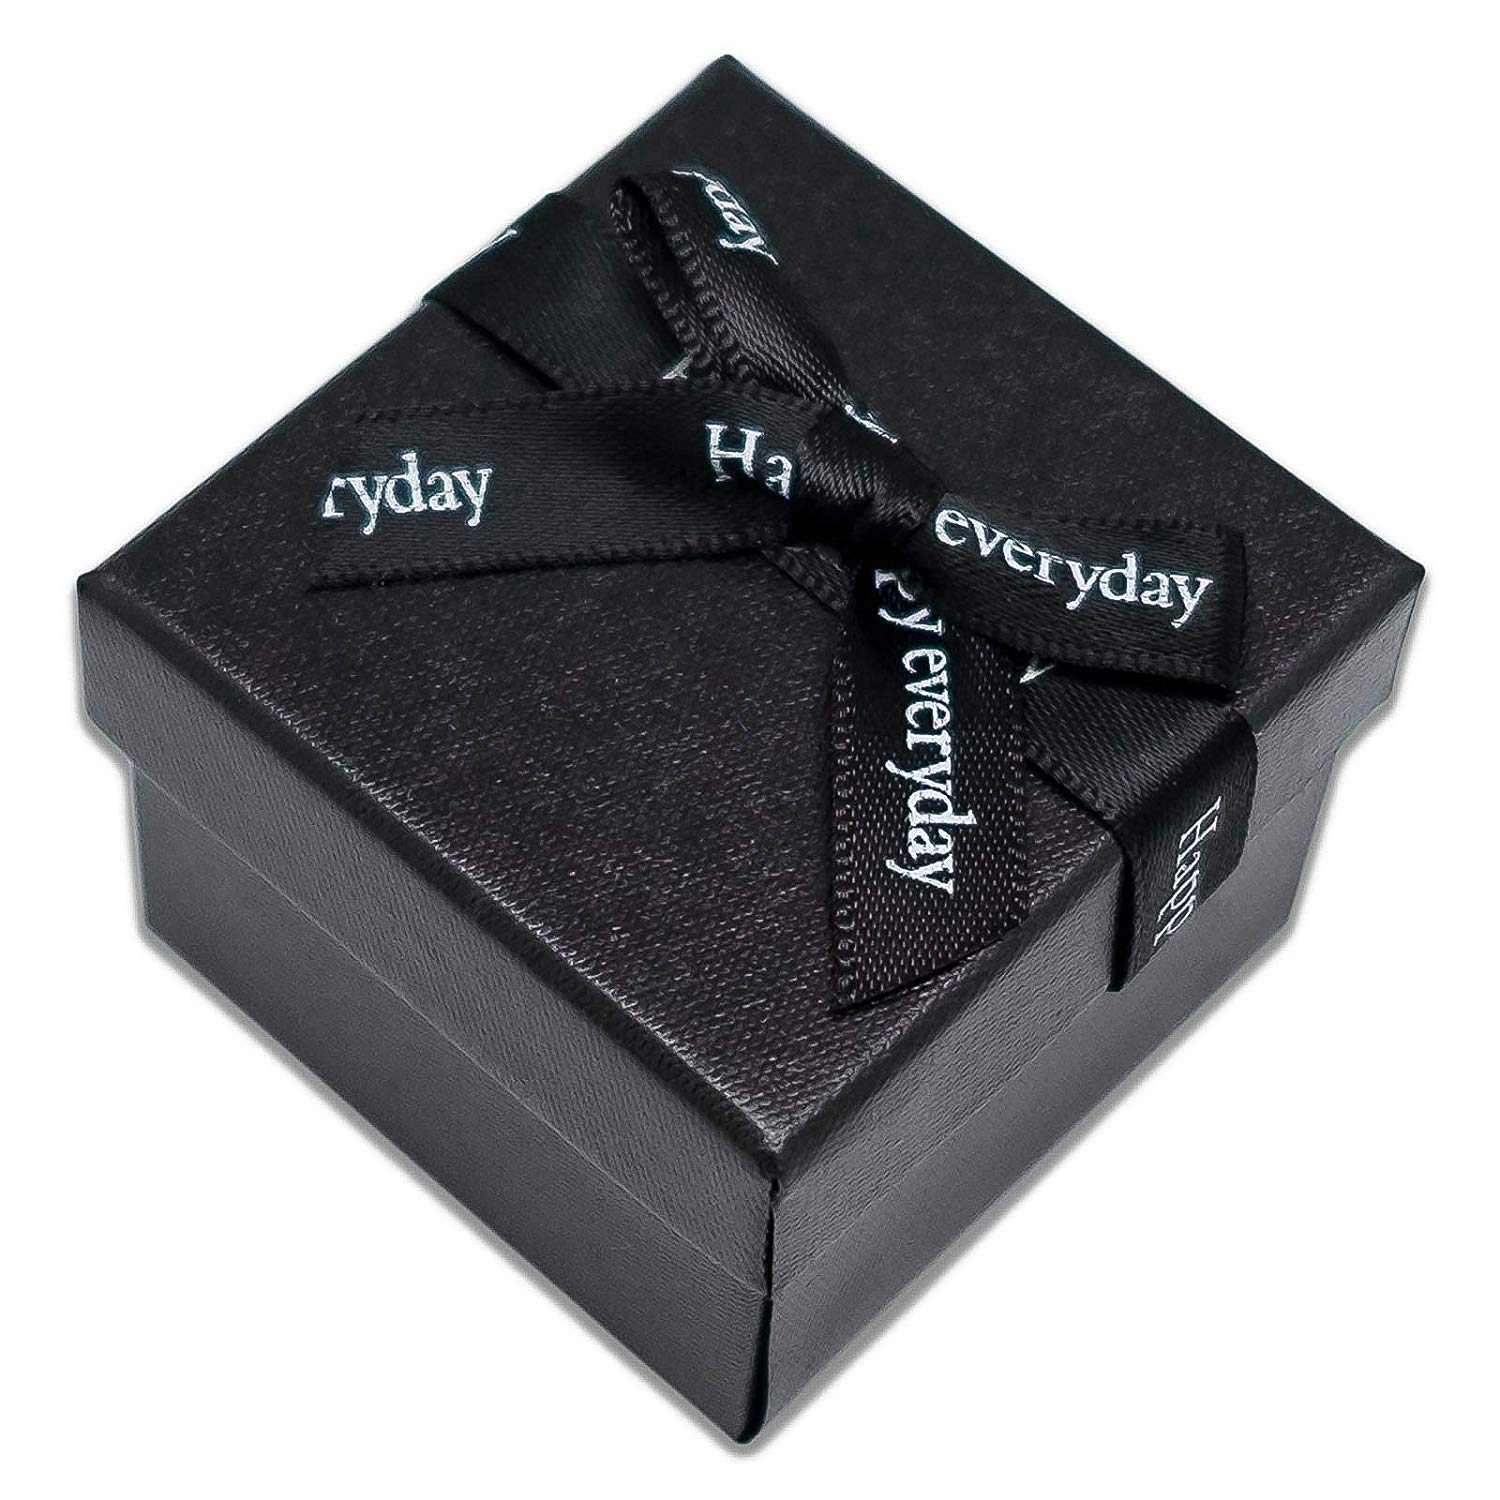 1 3/4" x 1 3/4" Black Linen Paper Cardboard Ribbon Bow Jewelry Box